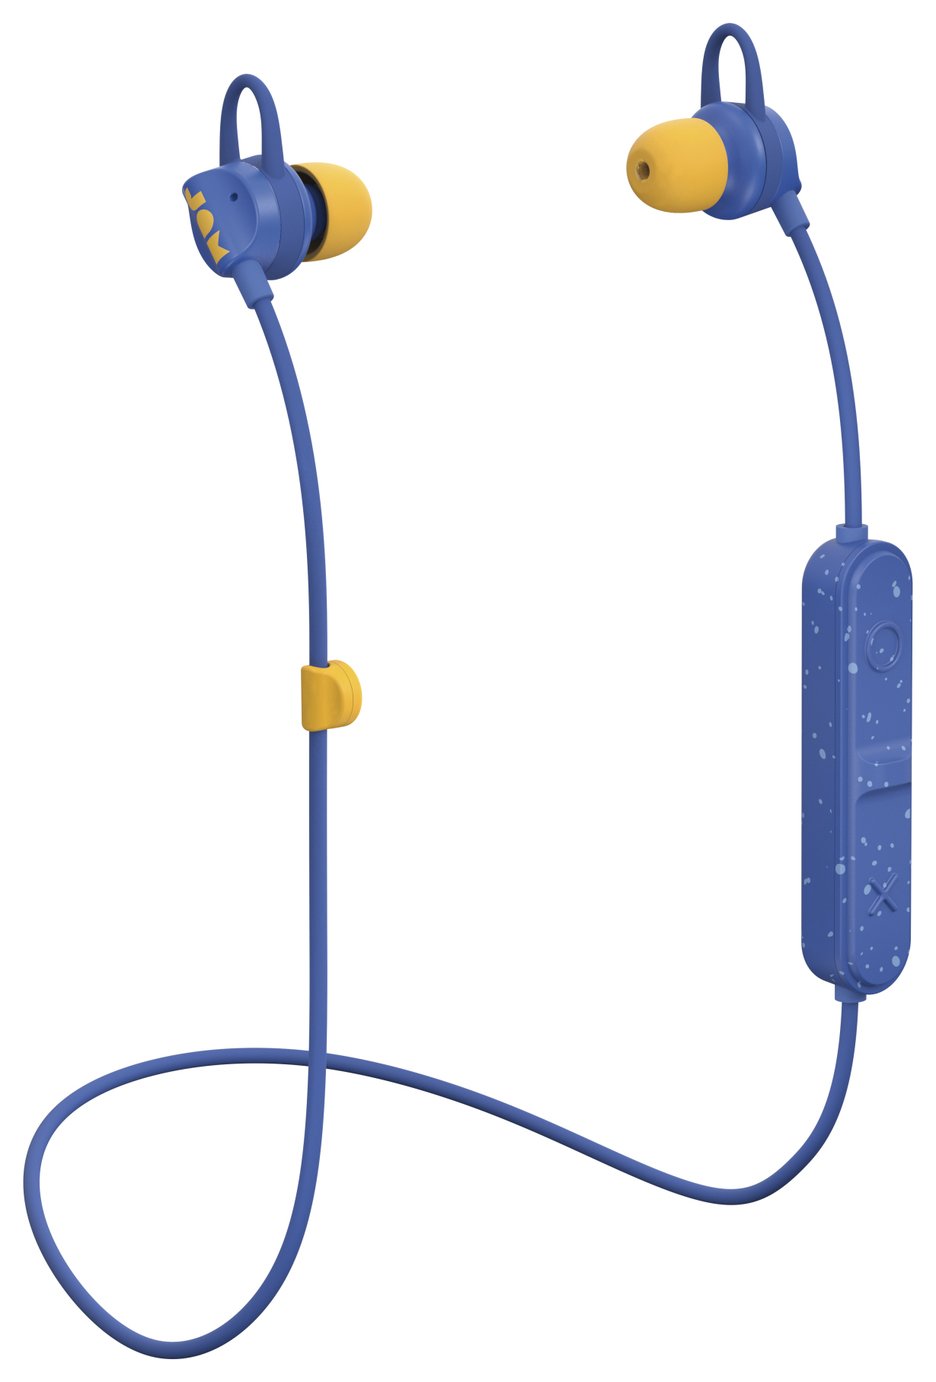 Jam Live Loose Wireless In-Ear Headphones - Blue